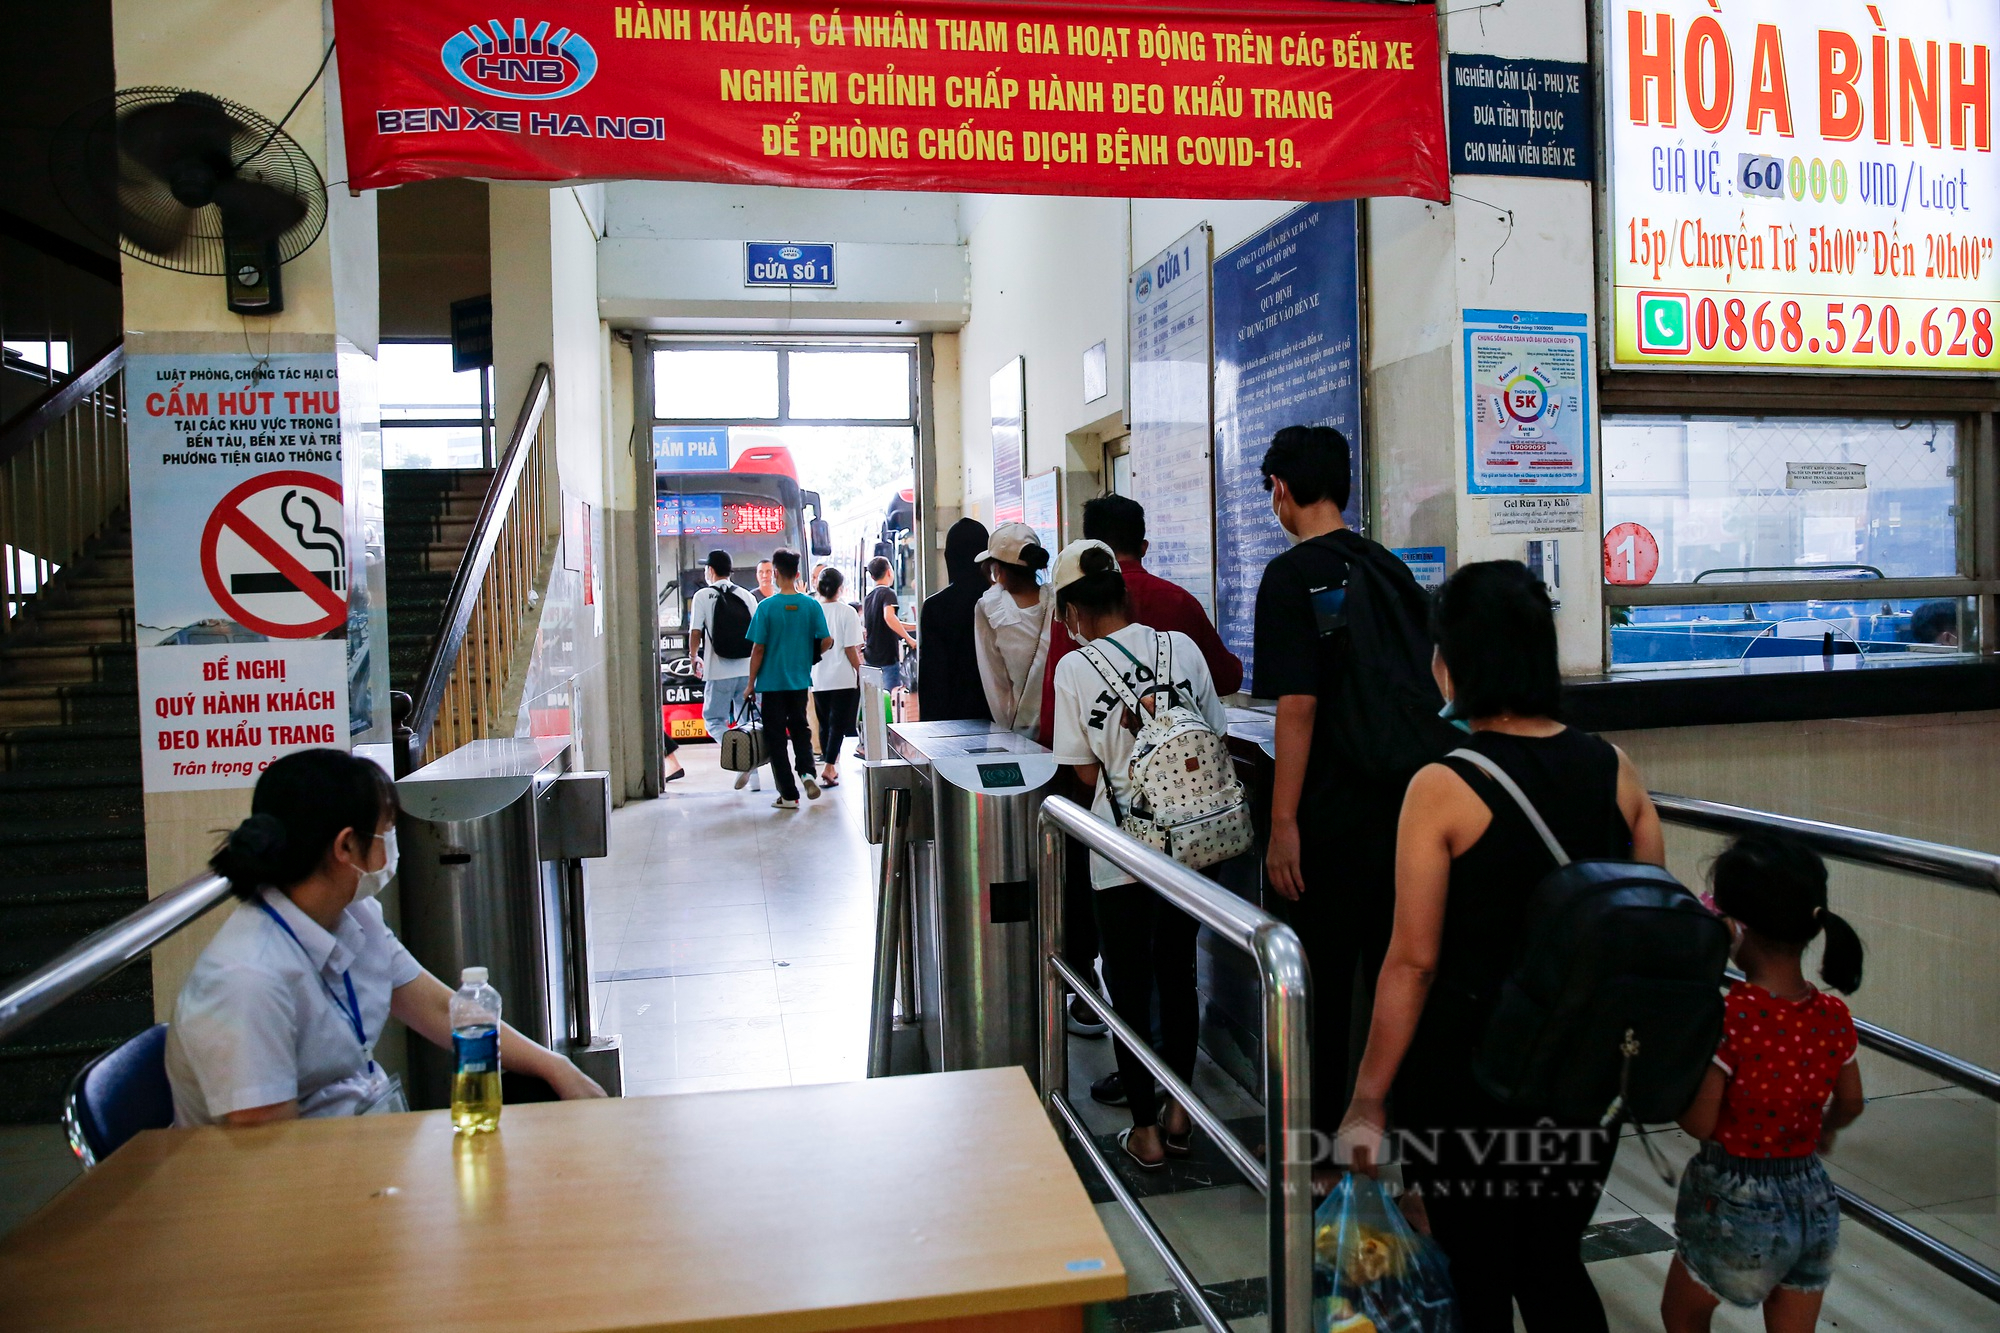 Bến xe tại Hà Nội đông nghịt, TTGT thắt chặt kiểm tra xe khách dịp nghỉ lễ Quốc khánh 2/9 - Ảnh 3.